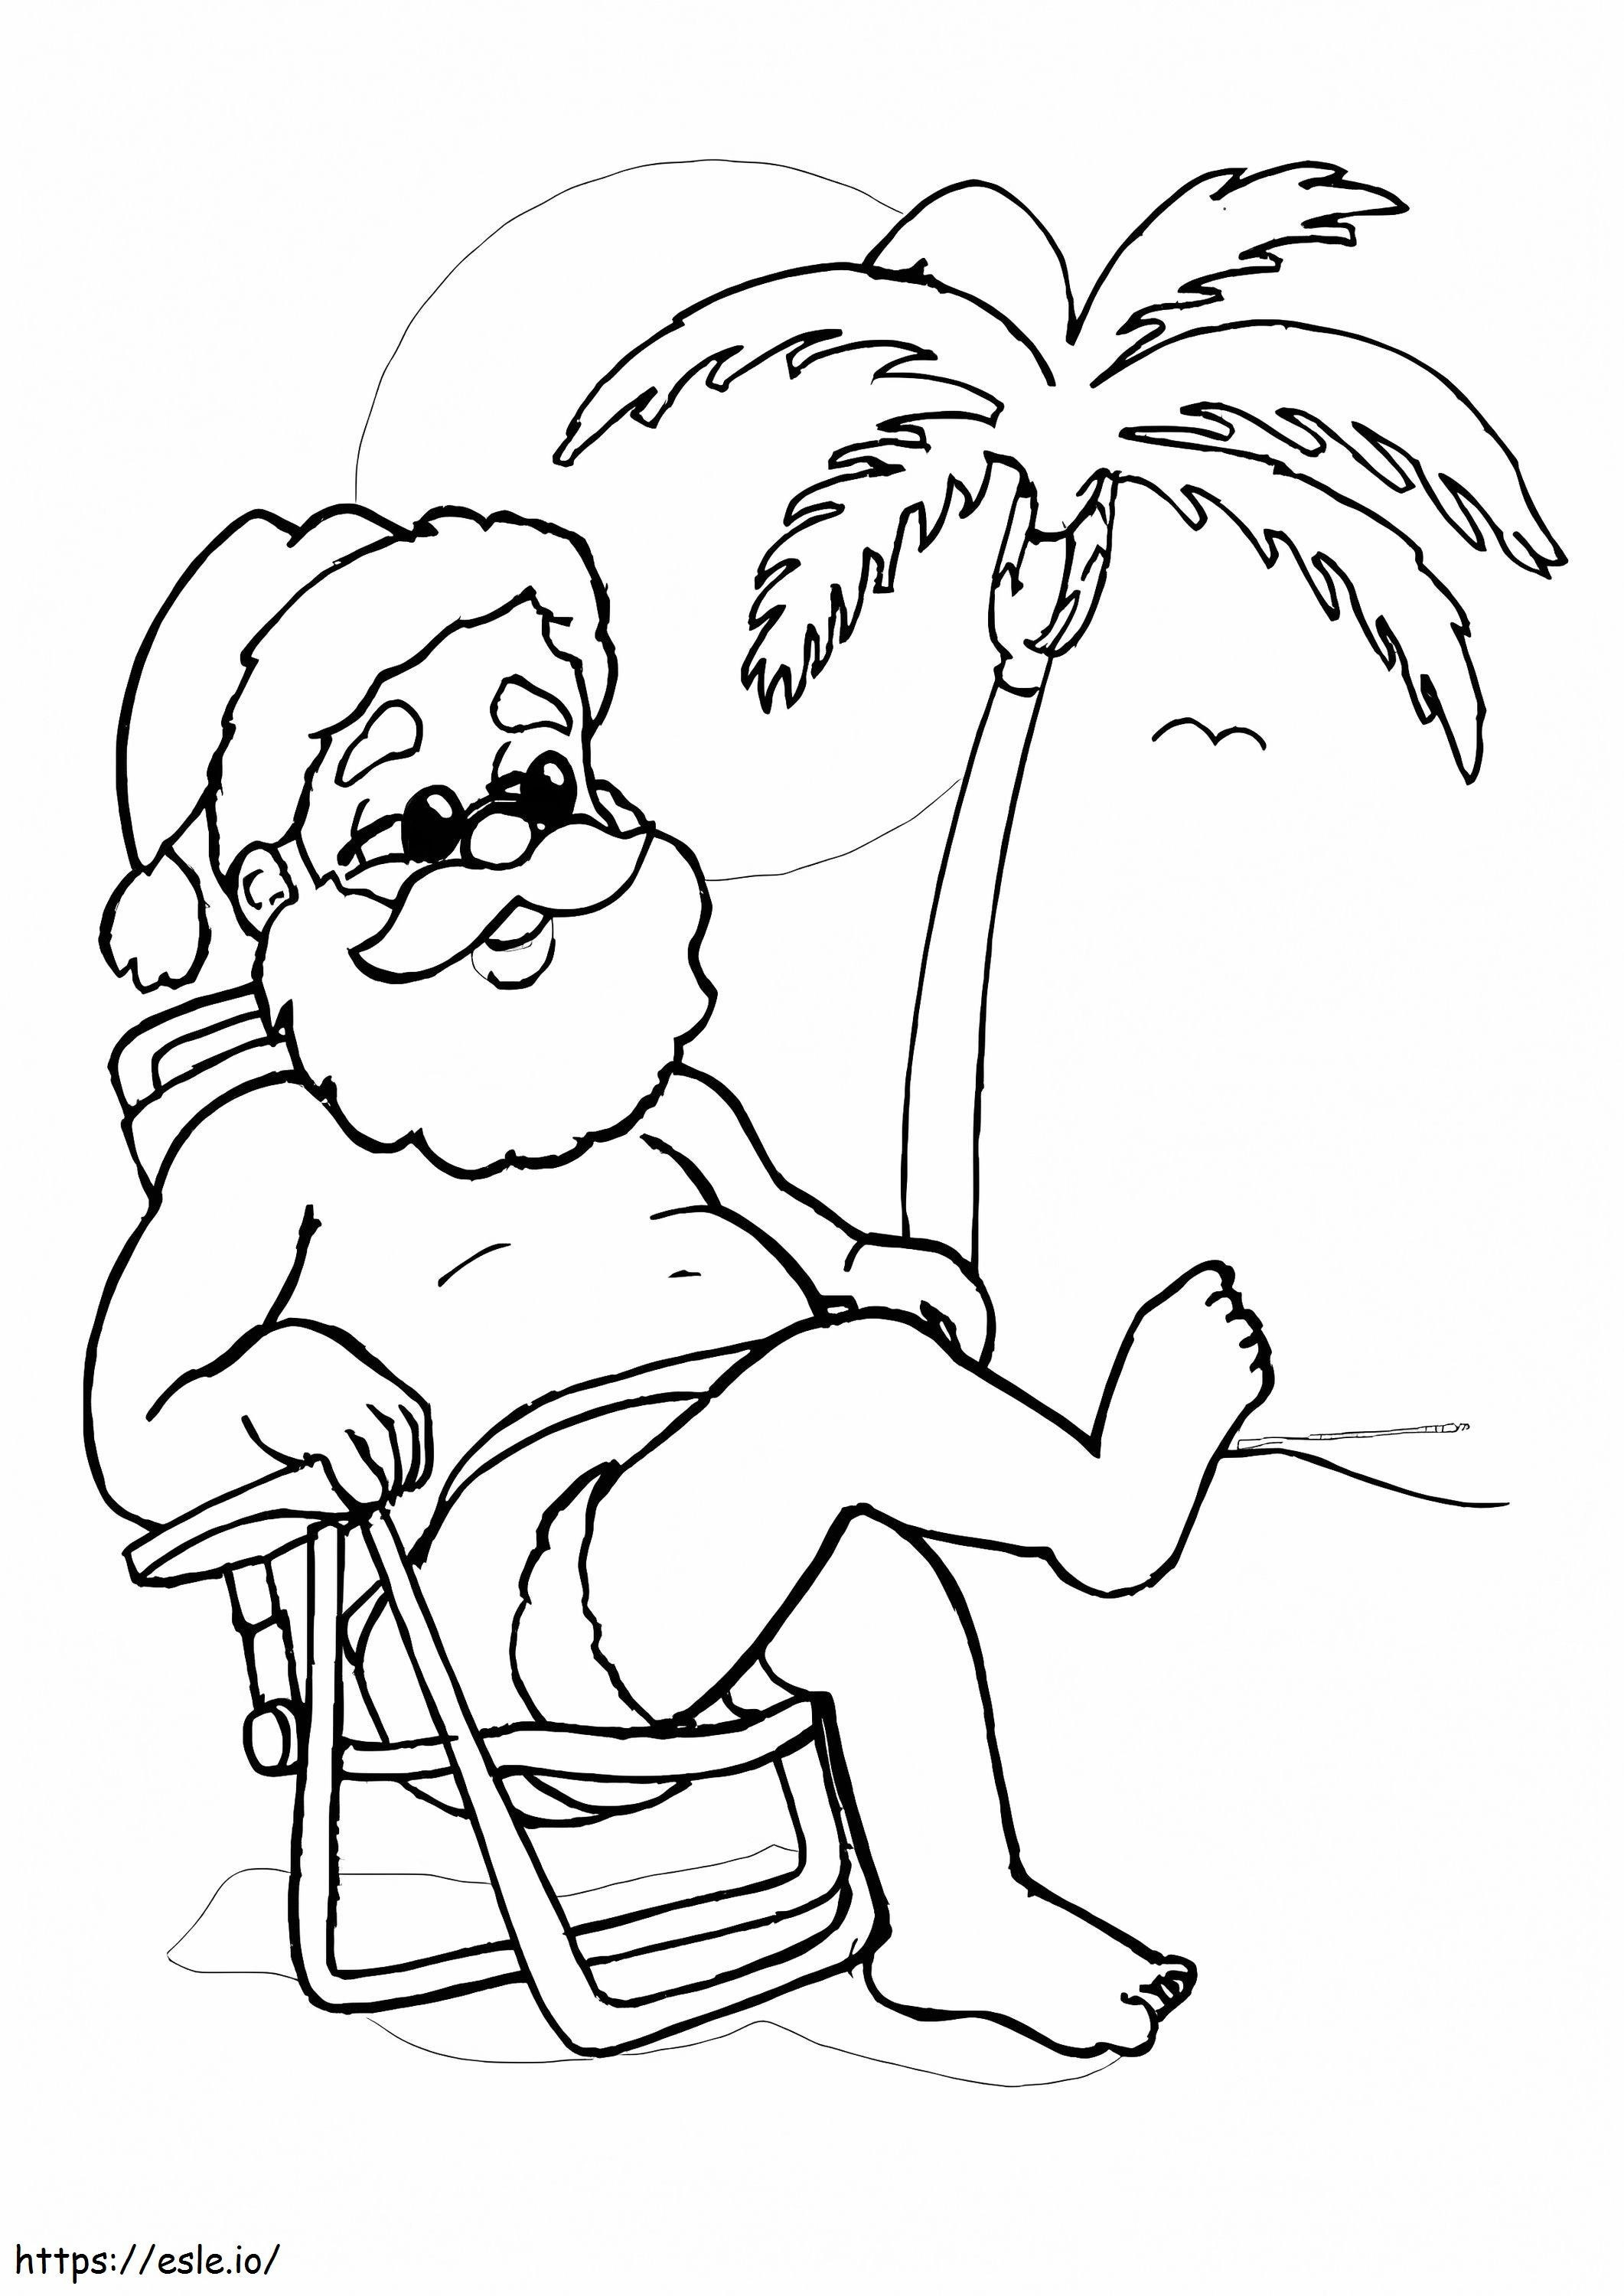 Weihnachtsmann am Strand ausmalbilder